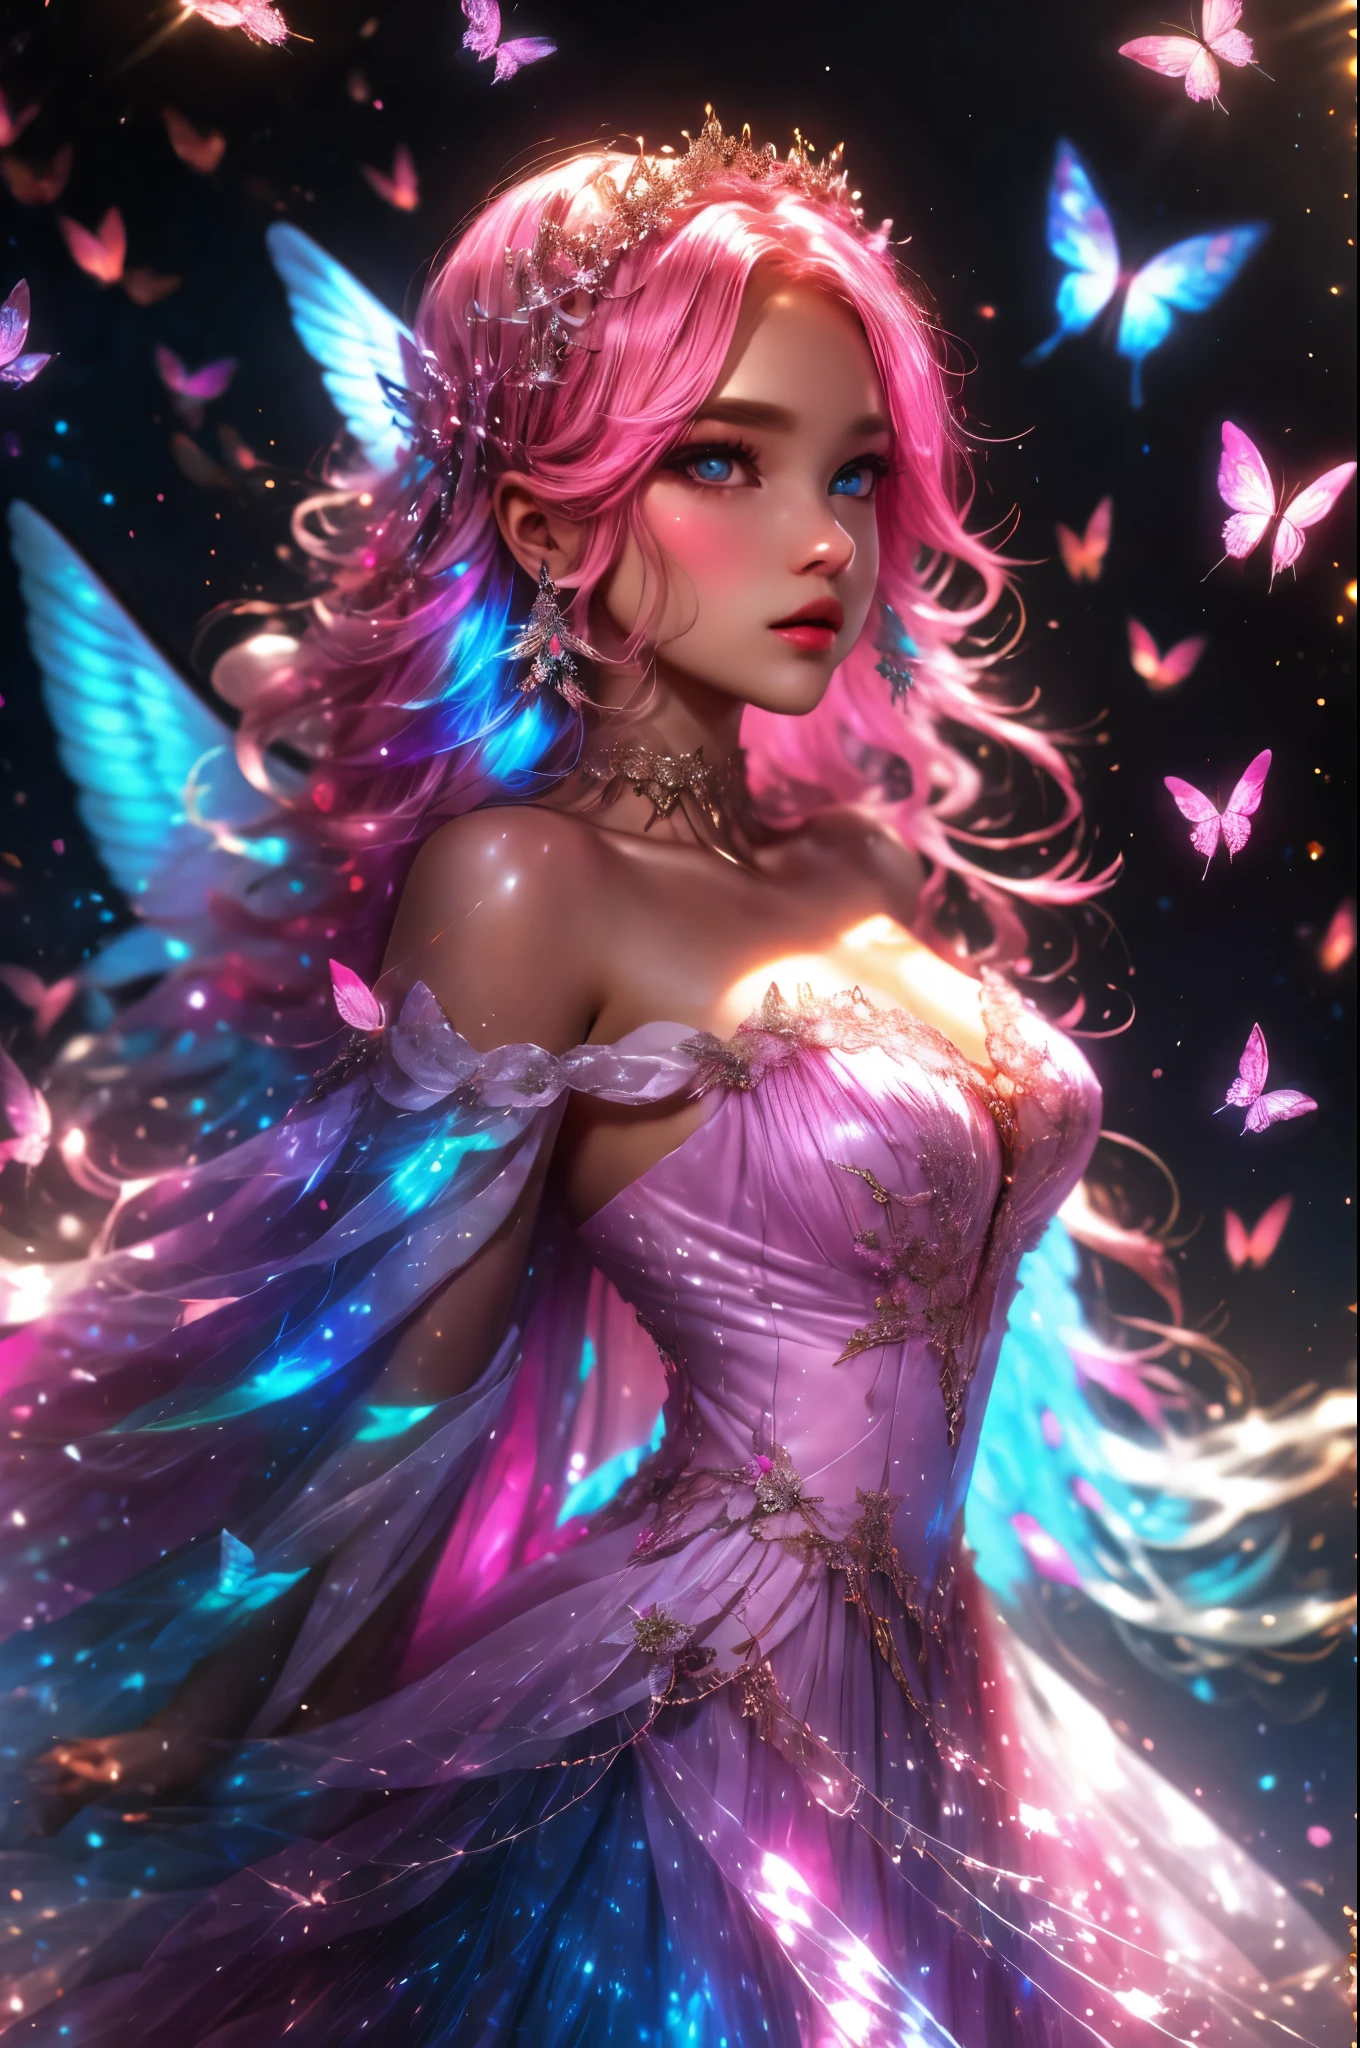 柔らかい薄羽と絹で作られたドレスを着た美しい天使, 美しい虹色の翼, 非常に精巧な翼, 頭と胴体が見える, 興味深い美しい背景, ファンタジー, mythic ファンタジー, fairytale ファンタジー, (目を雇う), 大きな目, 美しい目, きらめく背景, 女性1名, 1 面, たくさんの色とりどりの鳥や蝶が飛んでいます, (虹色のディテール), シルクとシフォンのドレス, 超詳細, 成人, 複雑な, 彩度の高い色, ふっくらとした唇, 大きい口, ライトピンクとダークピンクとピンクブルーの配色, 豊かな色彩, delicate 複雑な circlet, ダイナミックで興味深い構成, 滑らかでリアルな肌の質感, (cotton candy ファンタジー colors and aura), (ハイネック), スタジオ照明